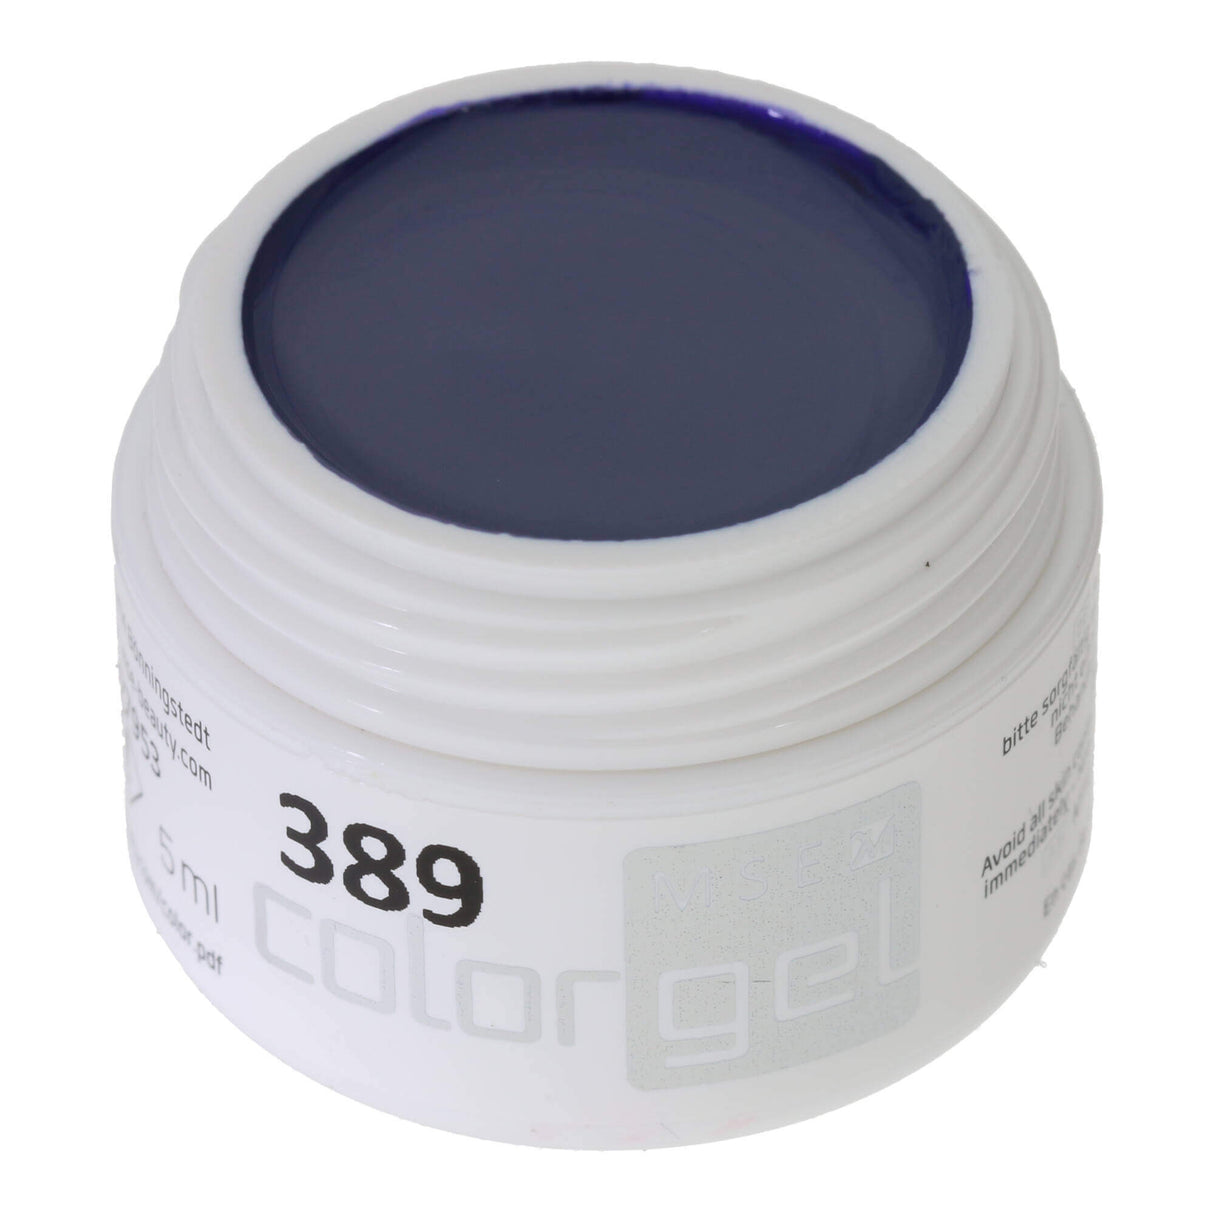 # 389 Premium-PURE Color Gel 5ml xanh xám